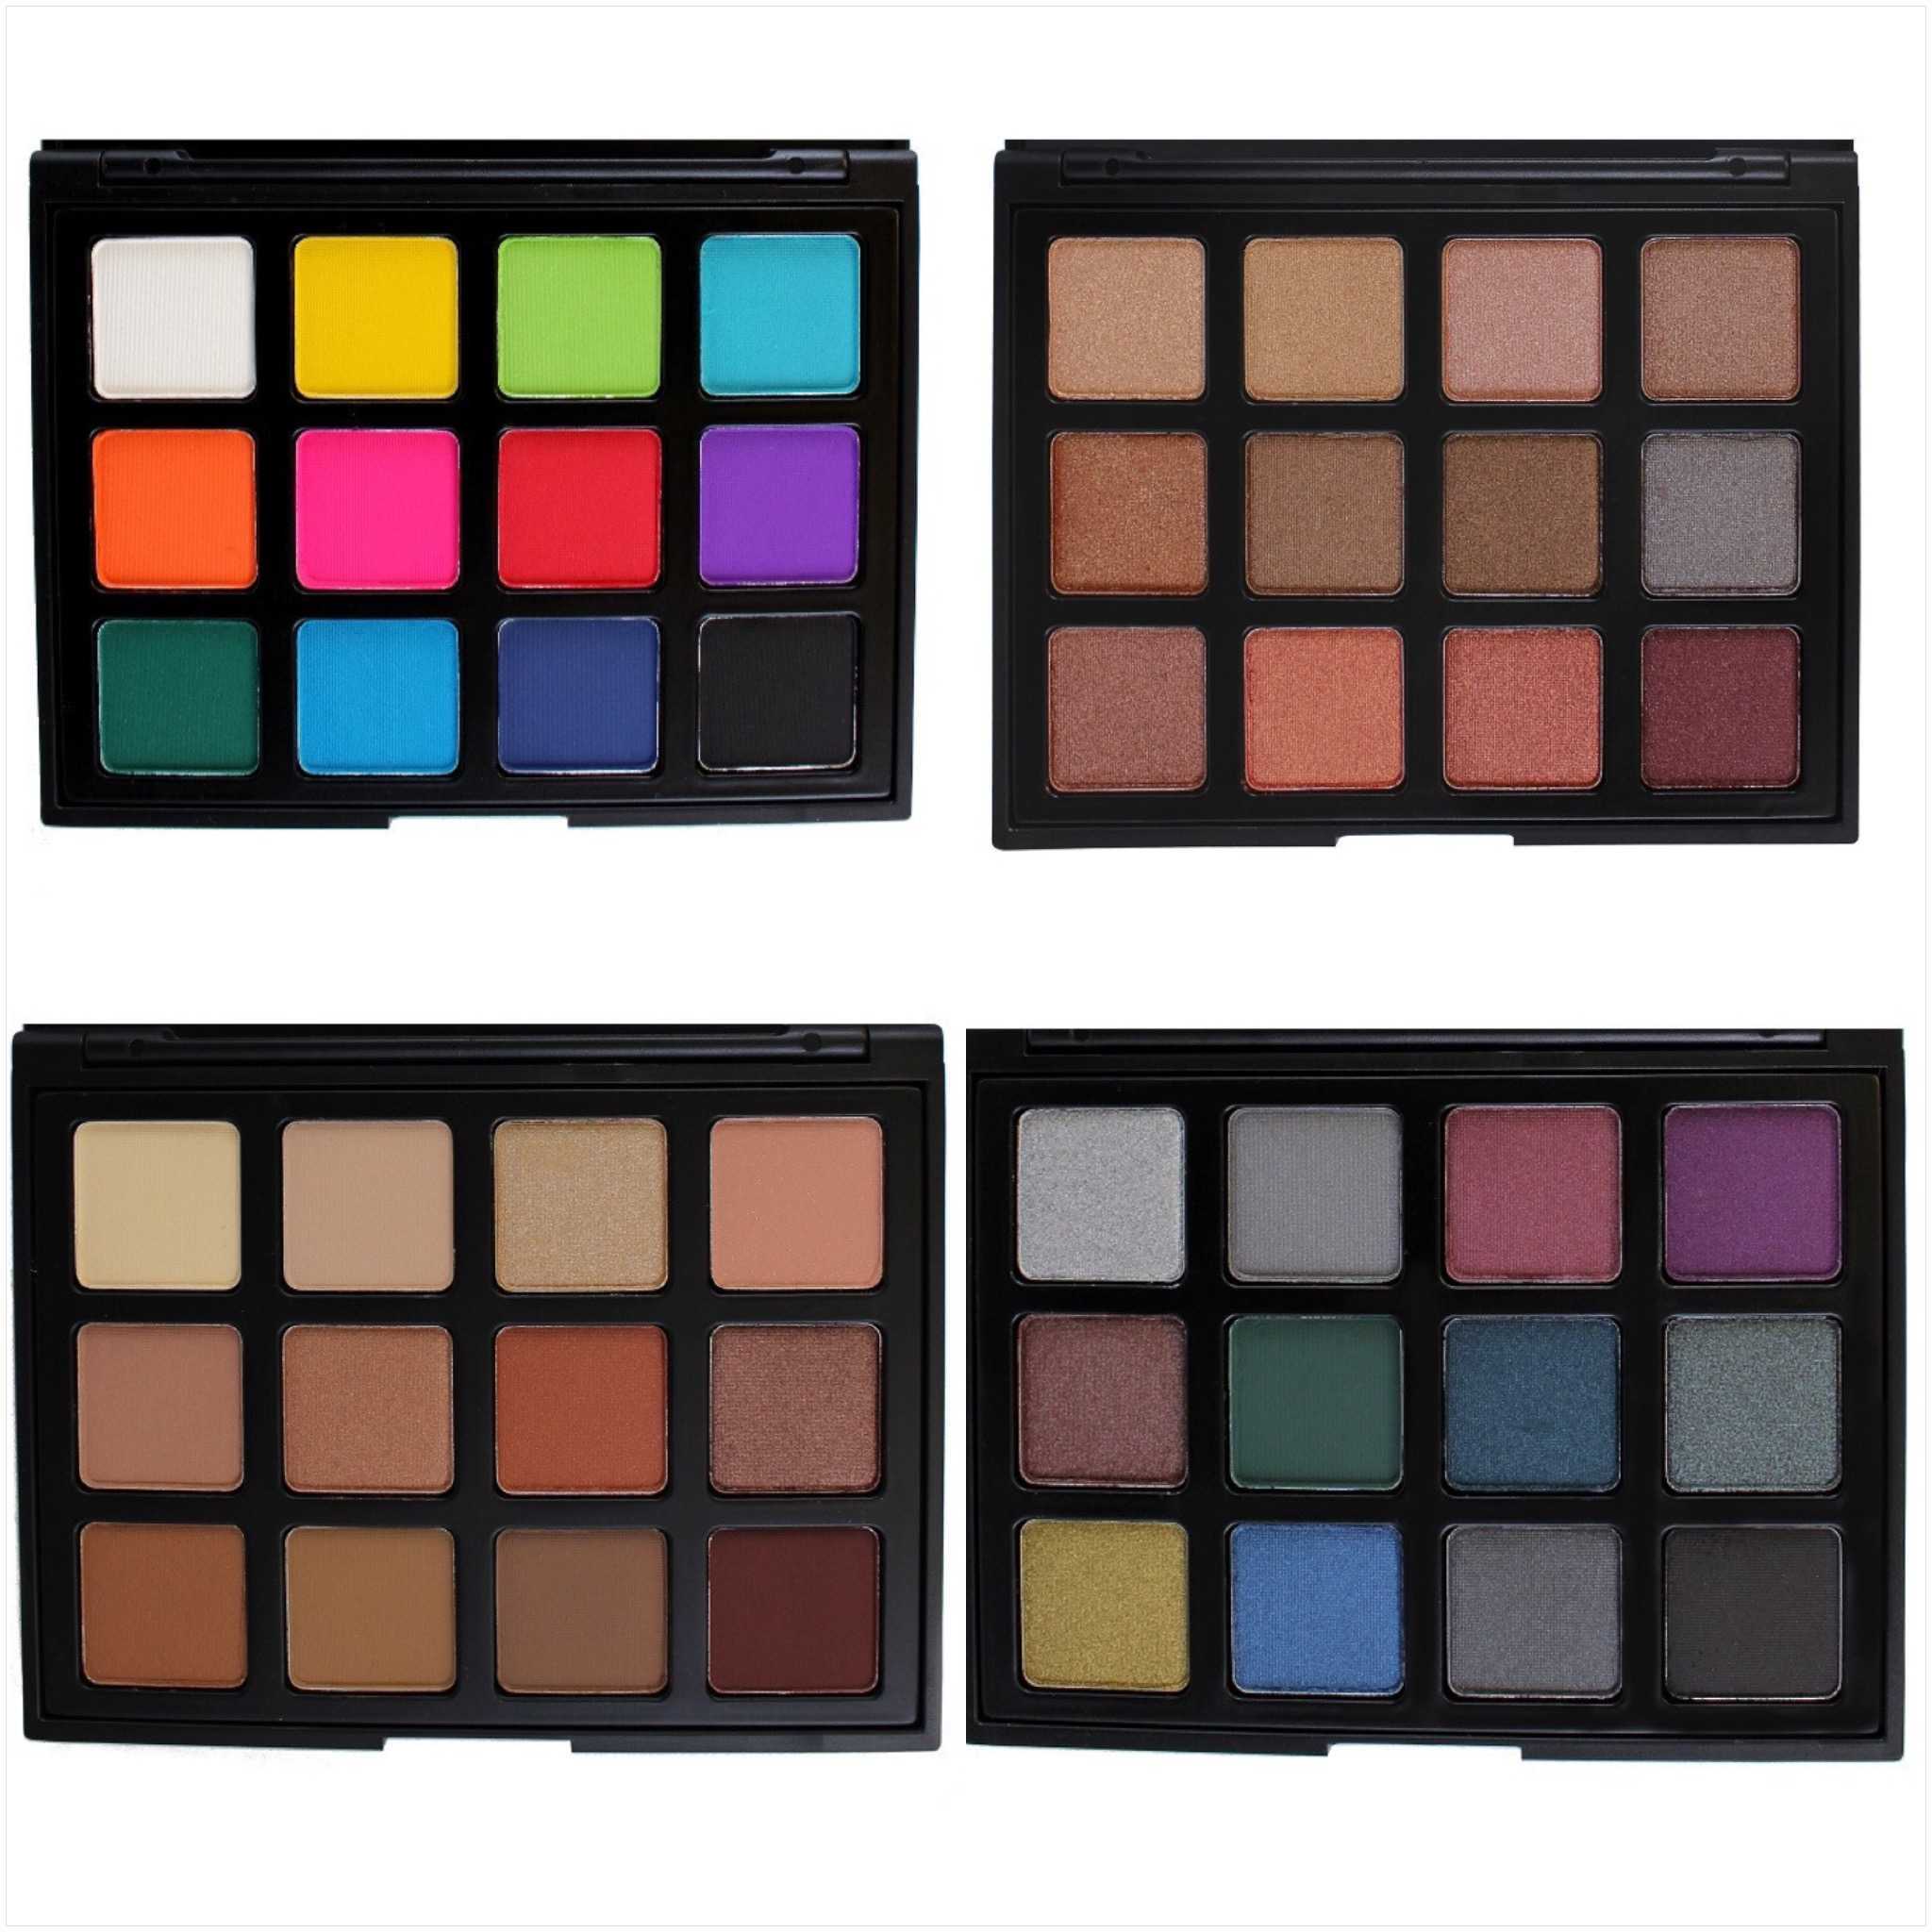 Makeup geek power pigments vs viseart editorial brights palette